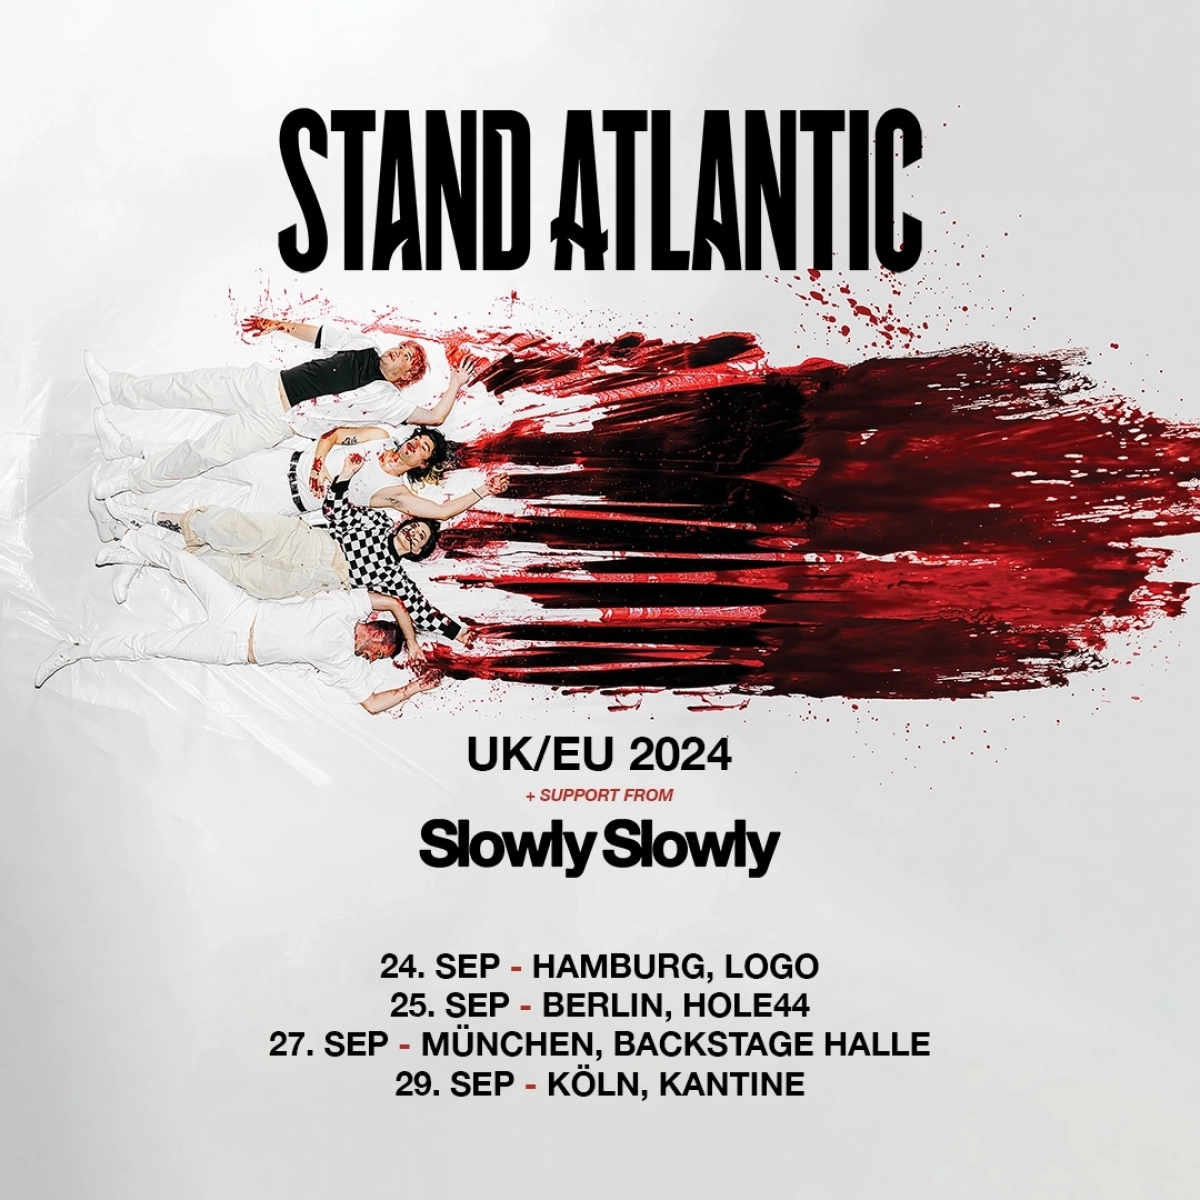 Stand Atlantic in der Kantine Köln Tickets